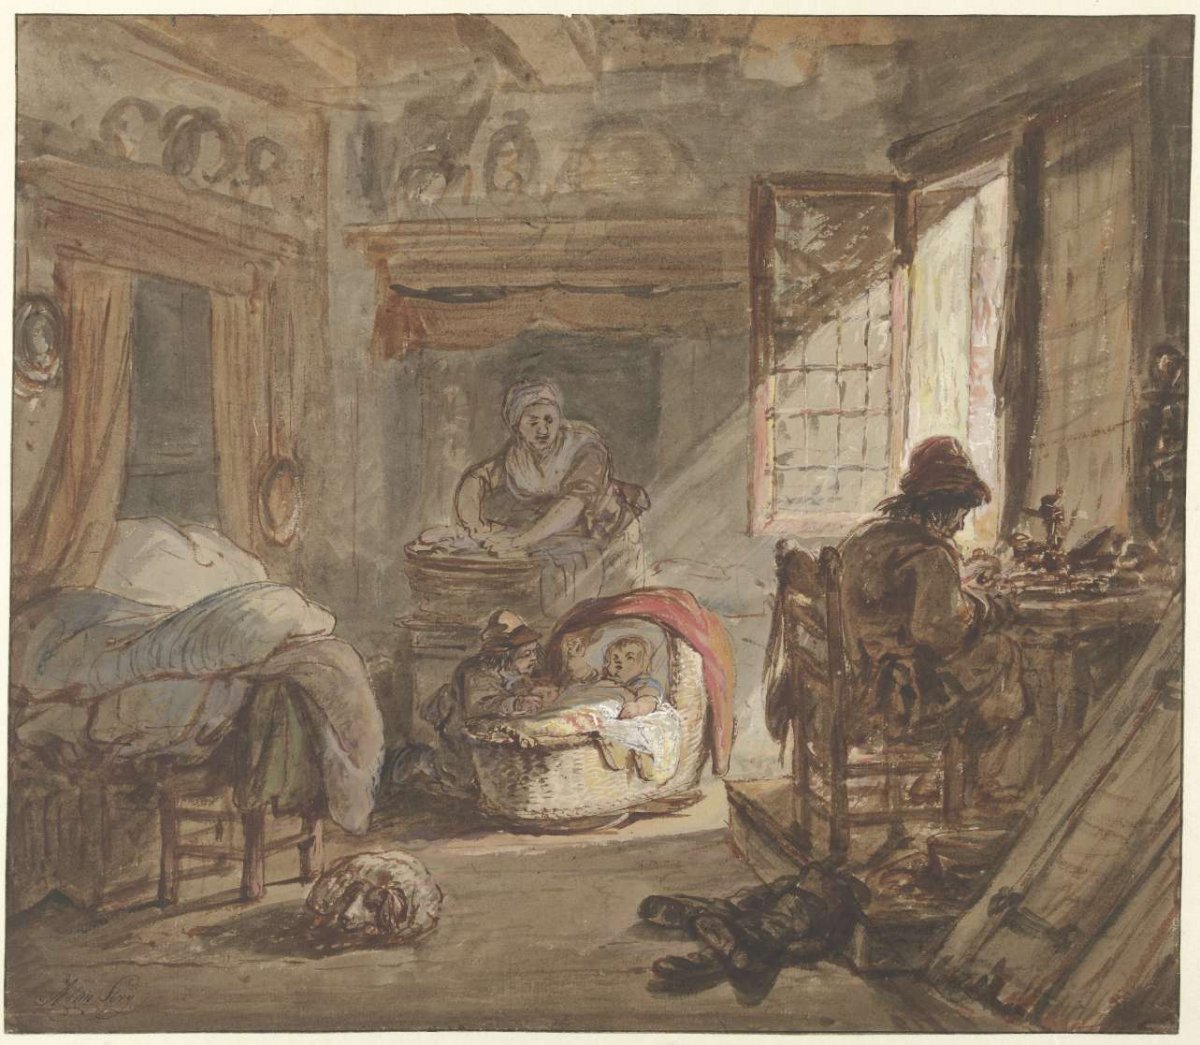 Interieur met familie, Abraham van Strij (I), 1763 - 1826